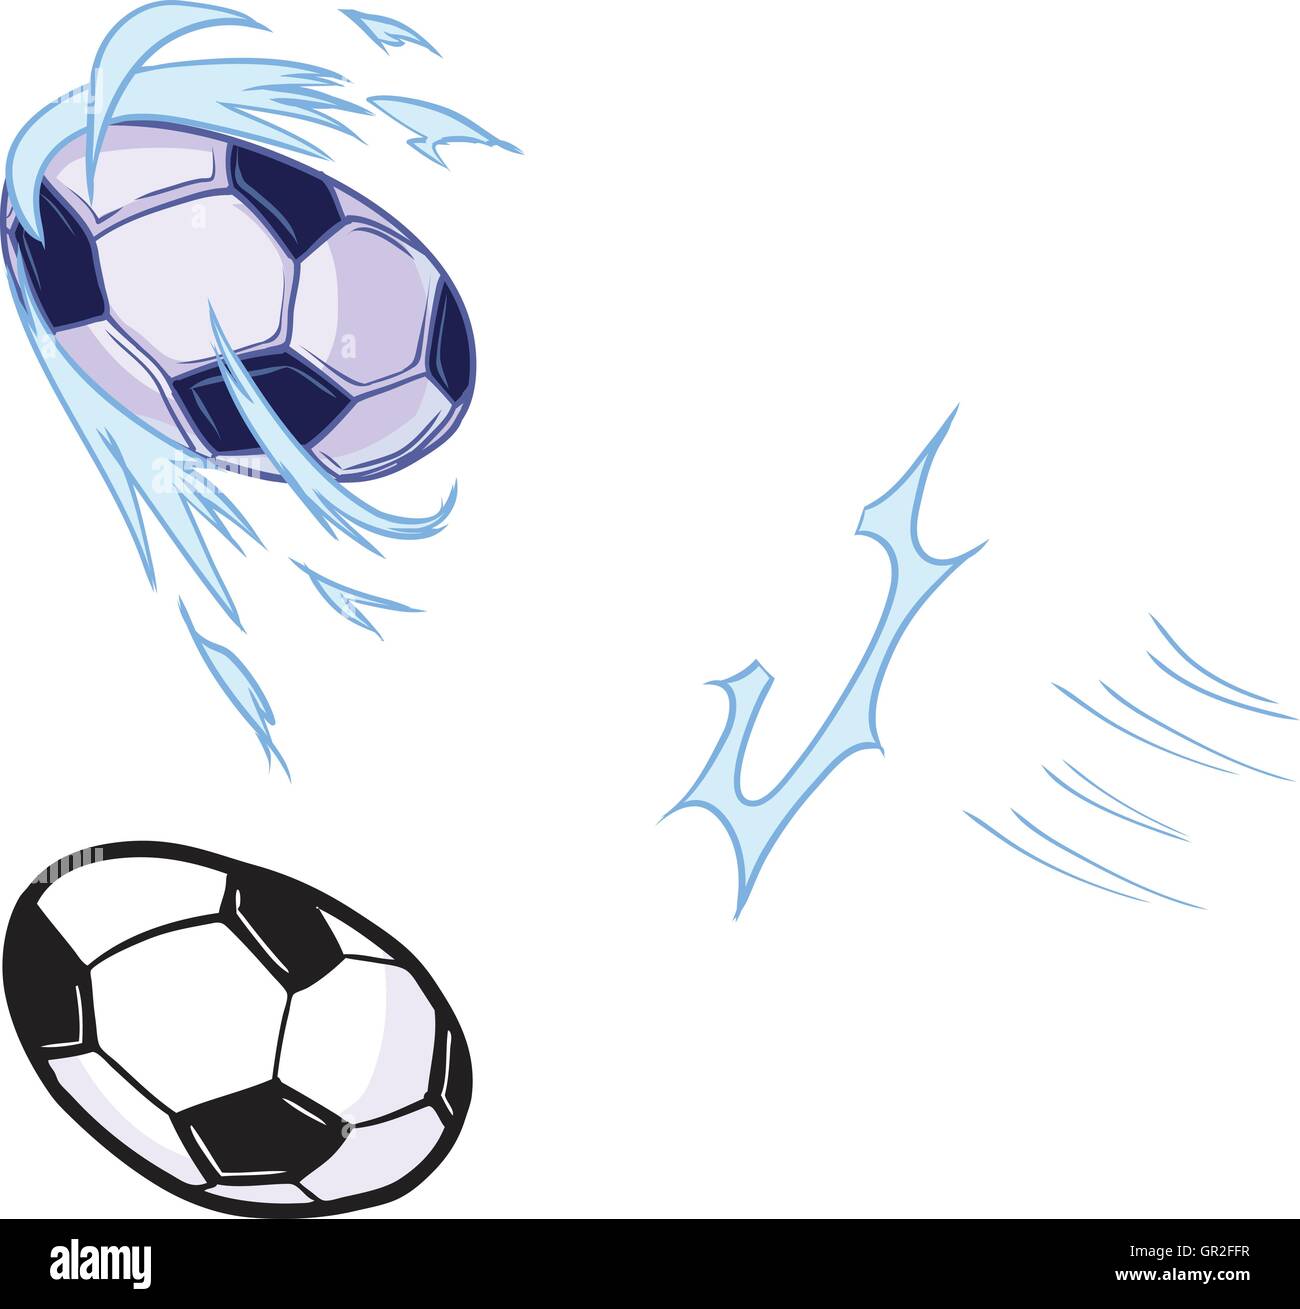 Pegatina de fútbol con diseño de bola de fútbol, 5.0 x 4.0 in